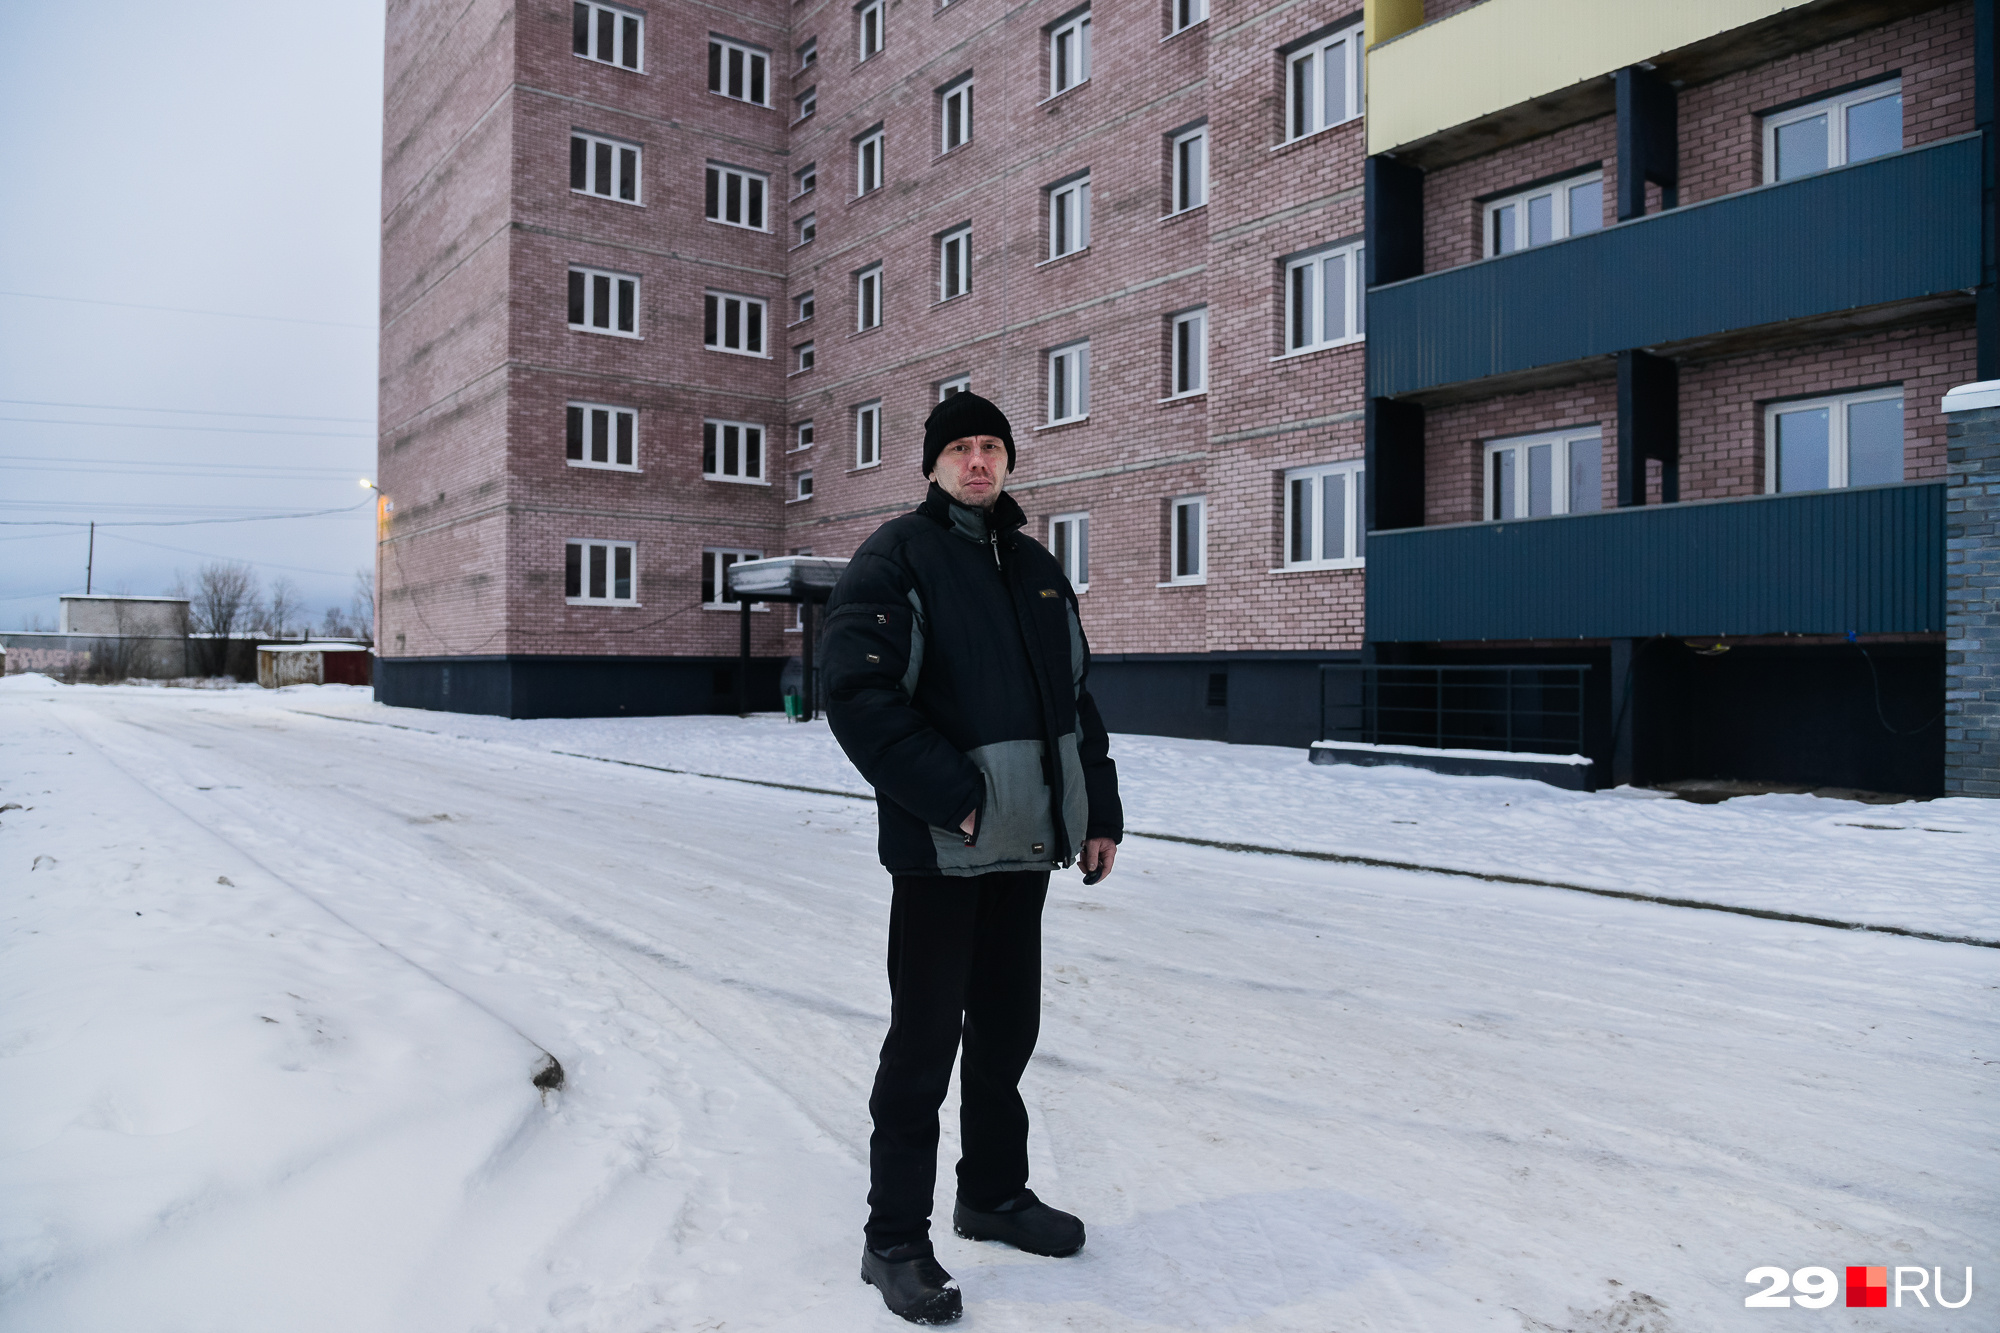 Переехать в новую квартиру Алексей должен был еще в 2017 году, но чудо произошло только сейчас — и очень удачно под Новый год